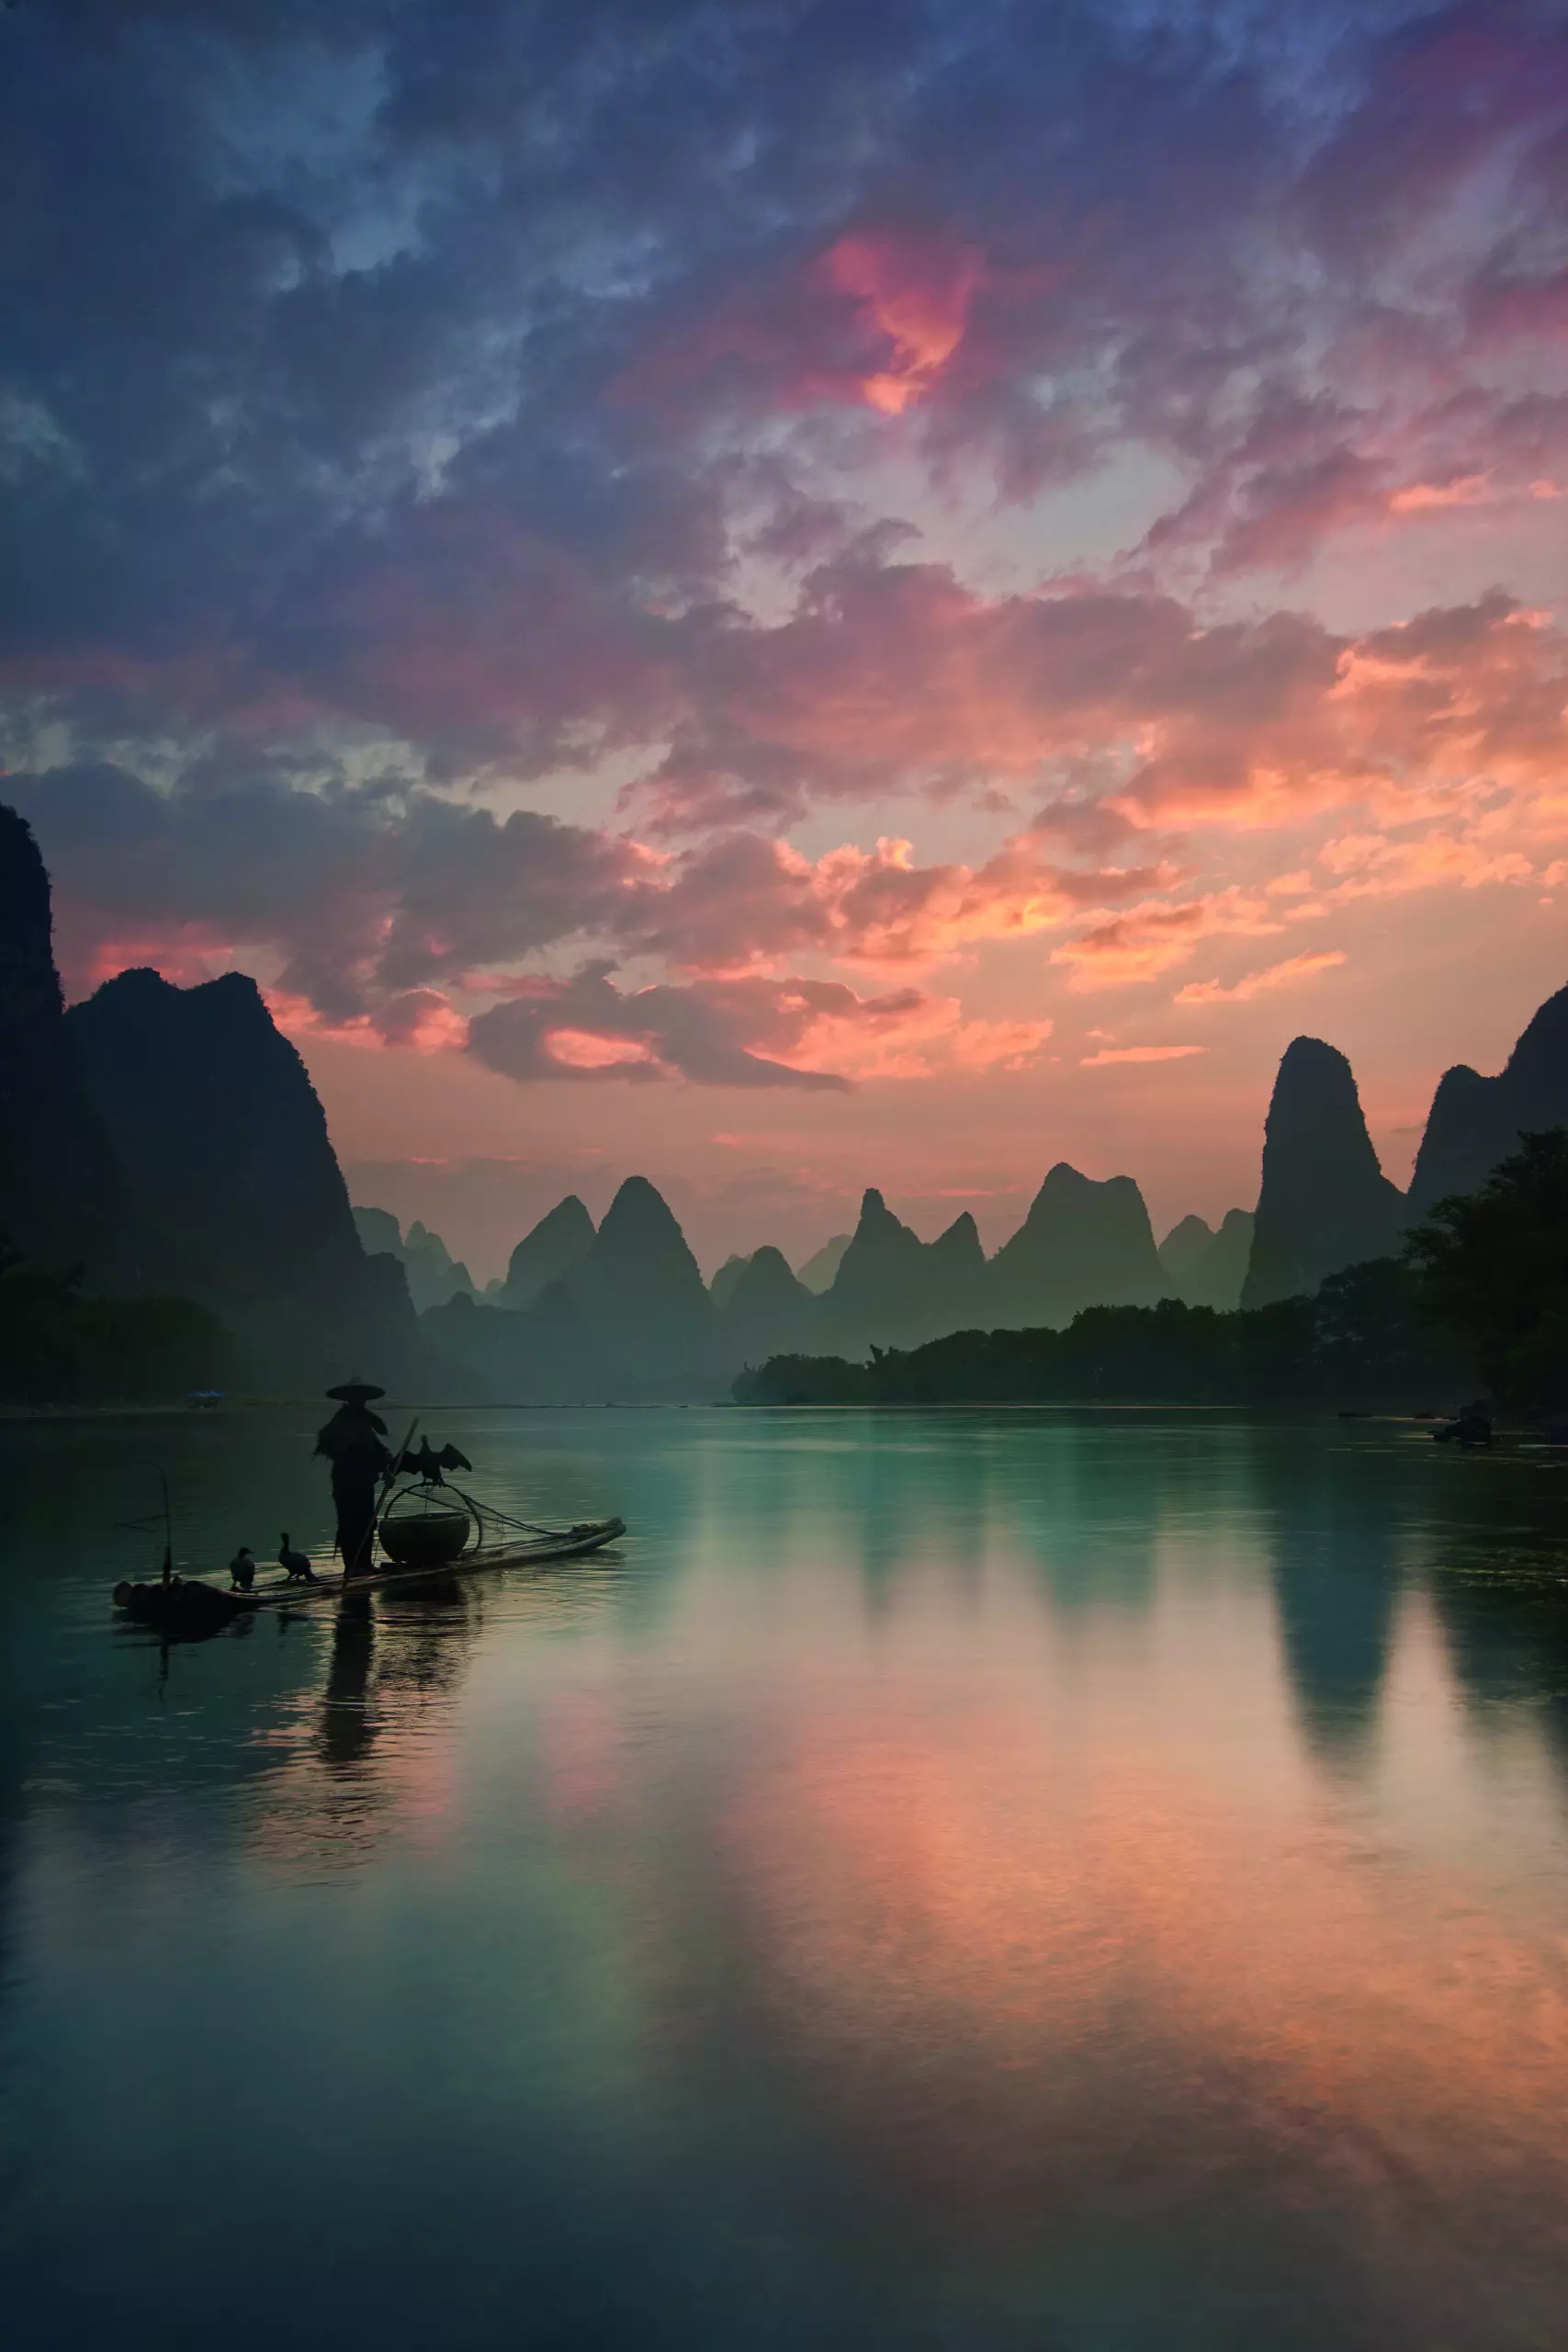 Wandbild (5264) Li River Sunrise by Yan Zhang präsentiert: Landschaften,Asien